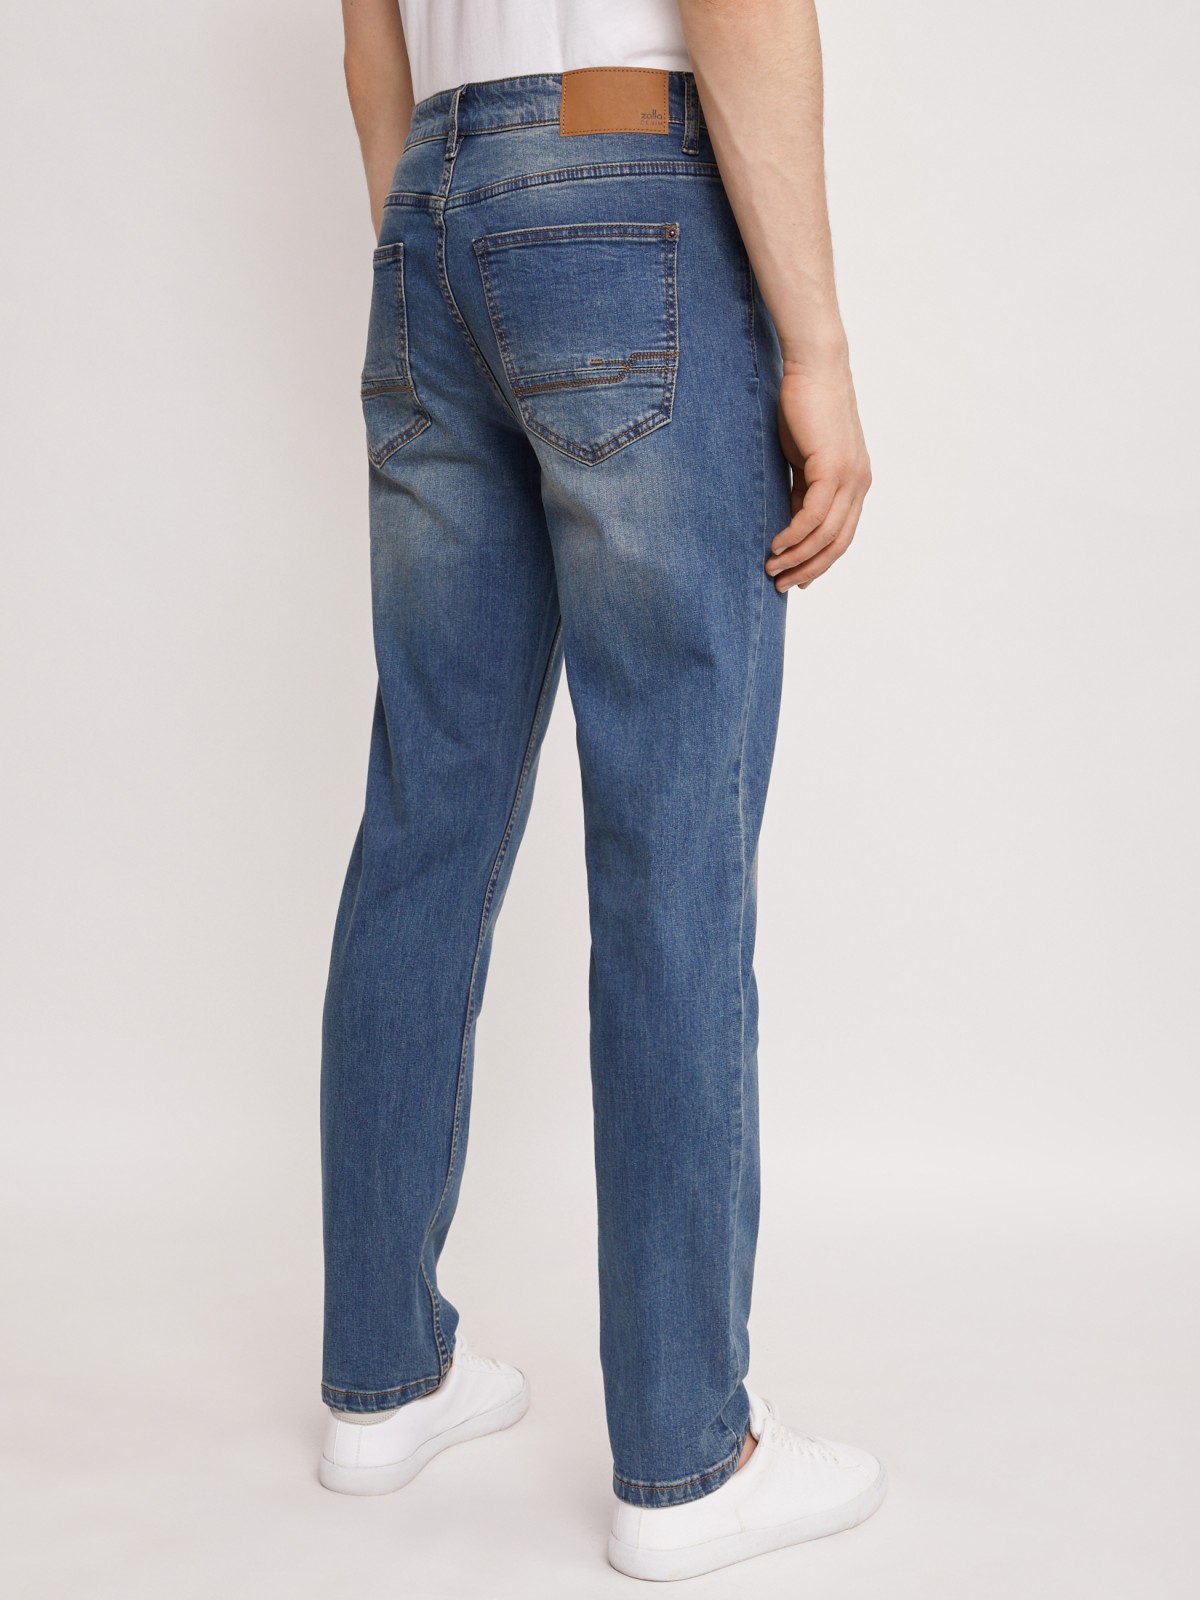 Брюки джинсовые zolla 01121714S033, цвет бирюзовый, размер 30 - фото 4